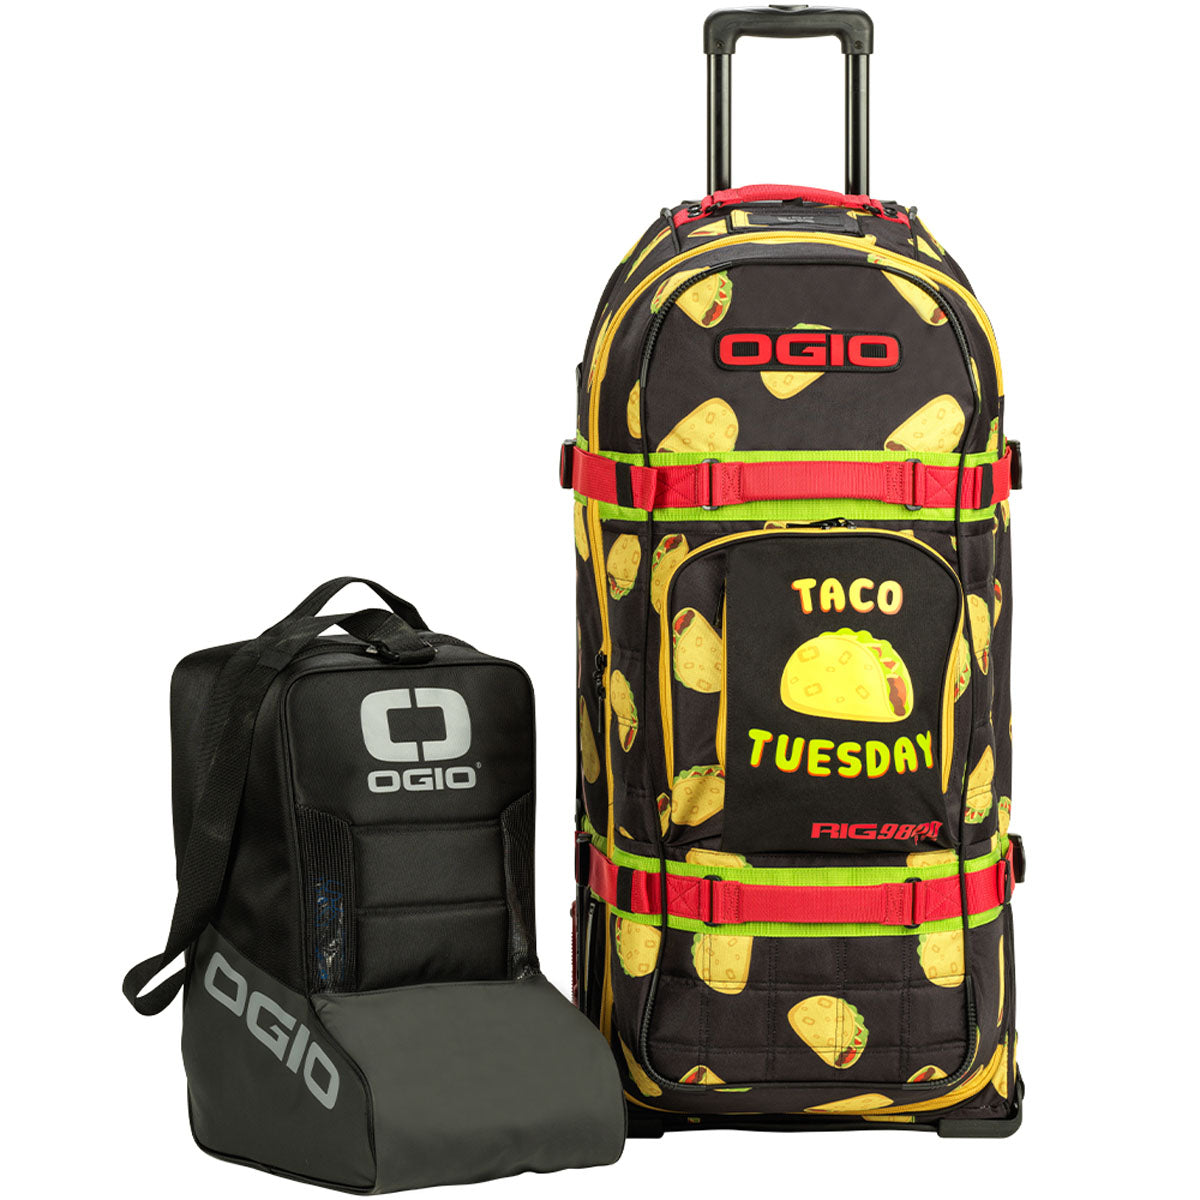 Ogio Rig 9800 Pro Gear Bag - Taco Tuesday - ExtremeSupply.com